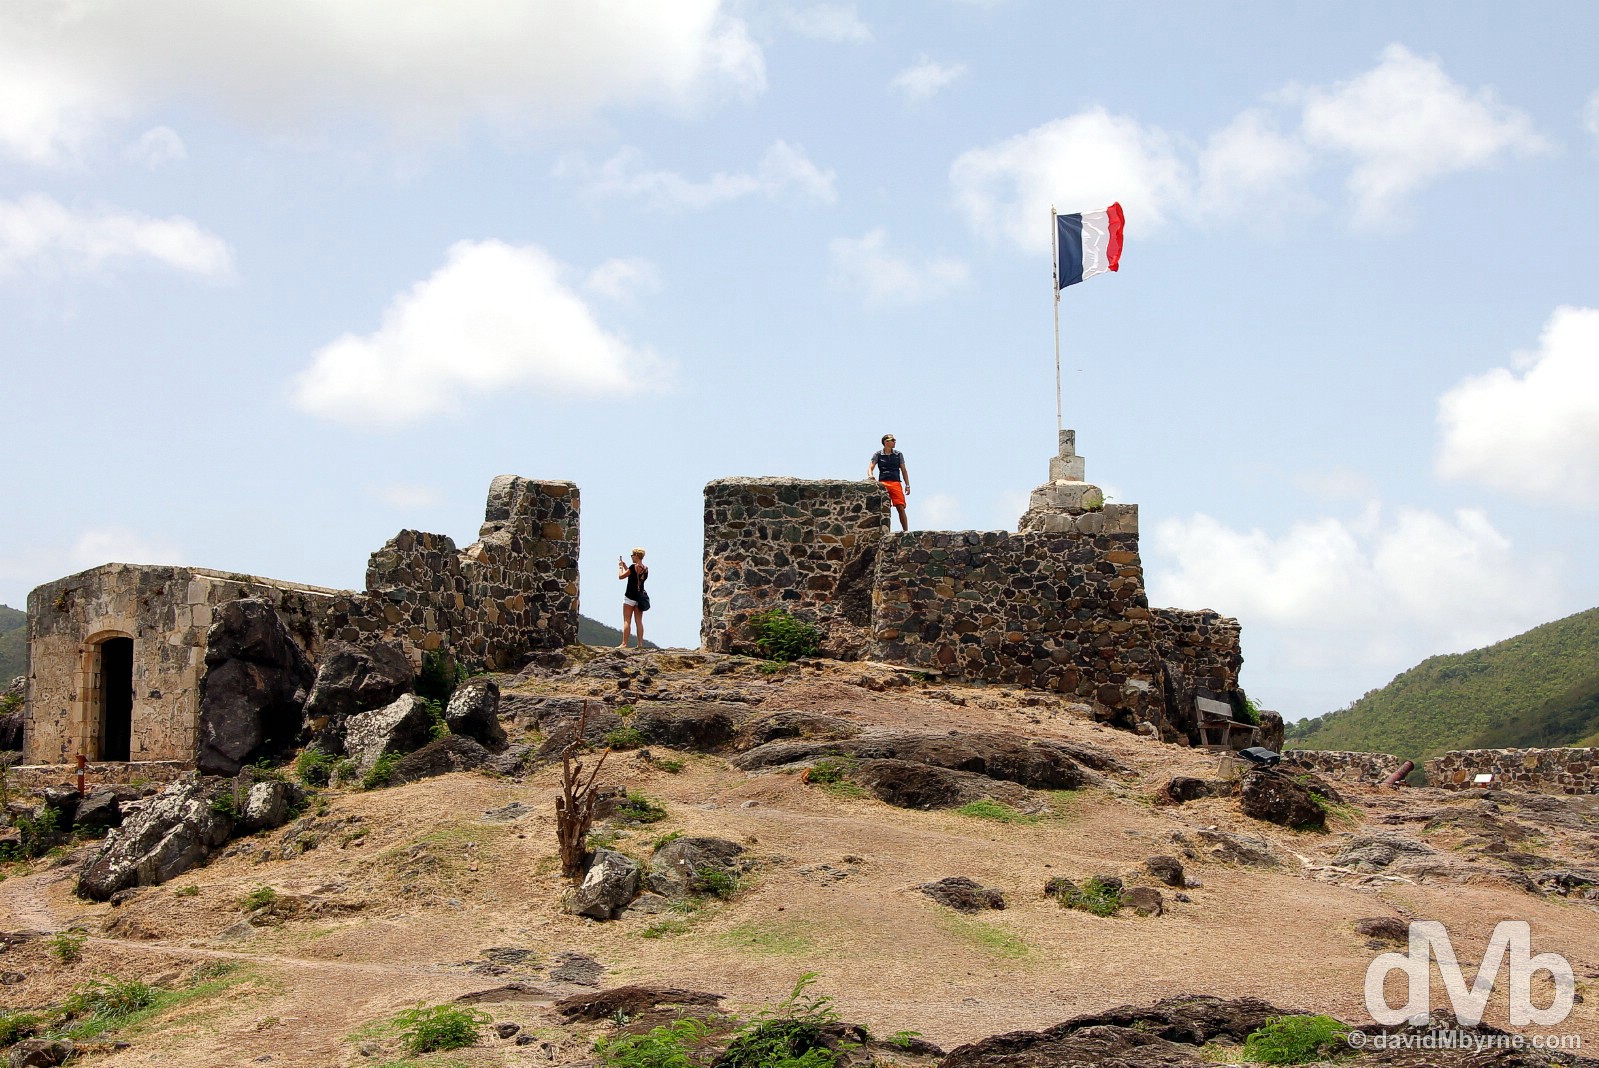 Fort Louis overlooking Marigot, Saint Martin, Lesser Antilles. June 8, 2015.